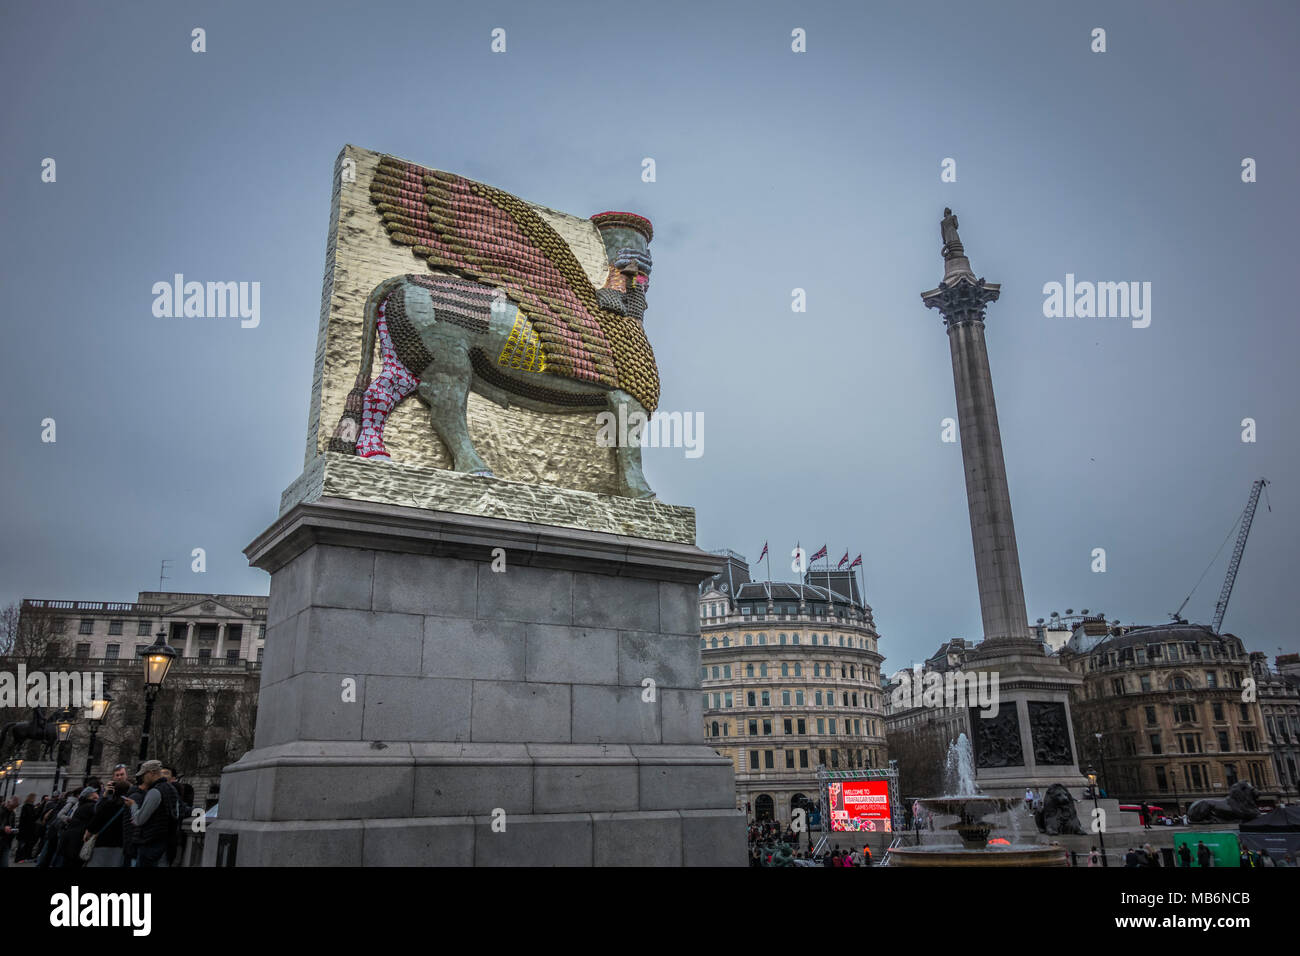 Michael Rakowitz "der unsichtbare Feind sollte nicht auf den vierten Sockel, Trafalgar Square, London, UK Stockfoto